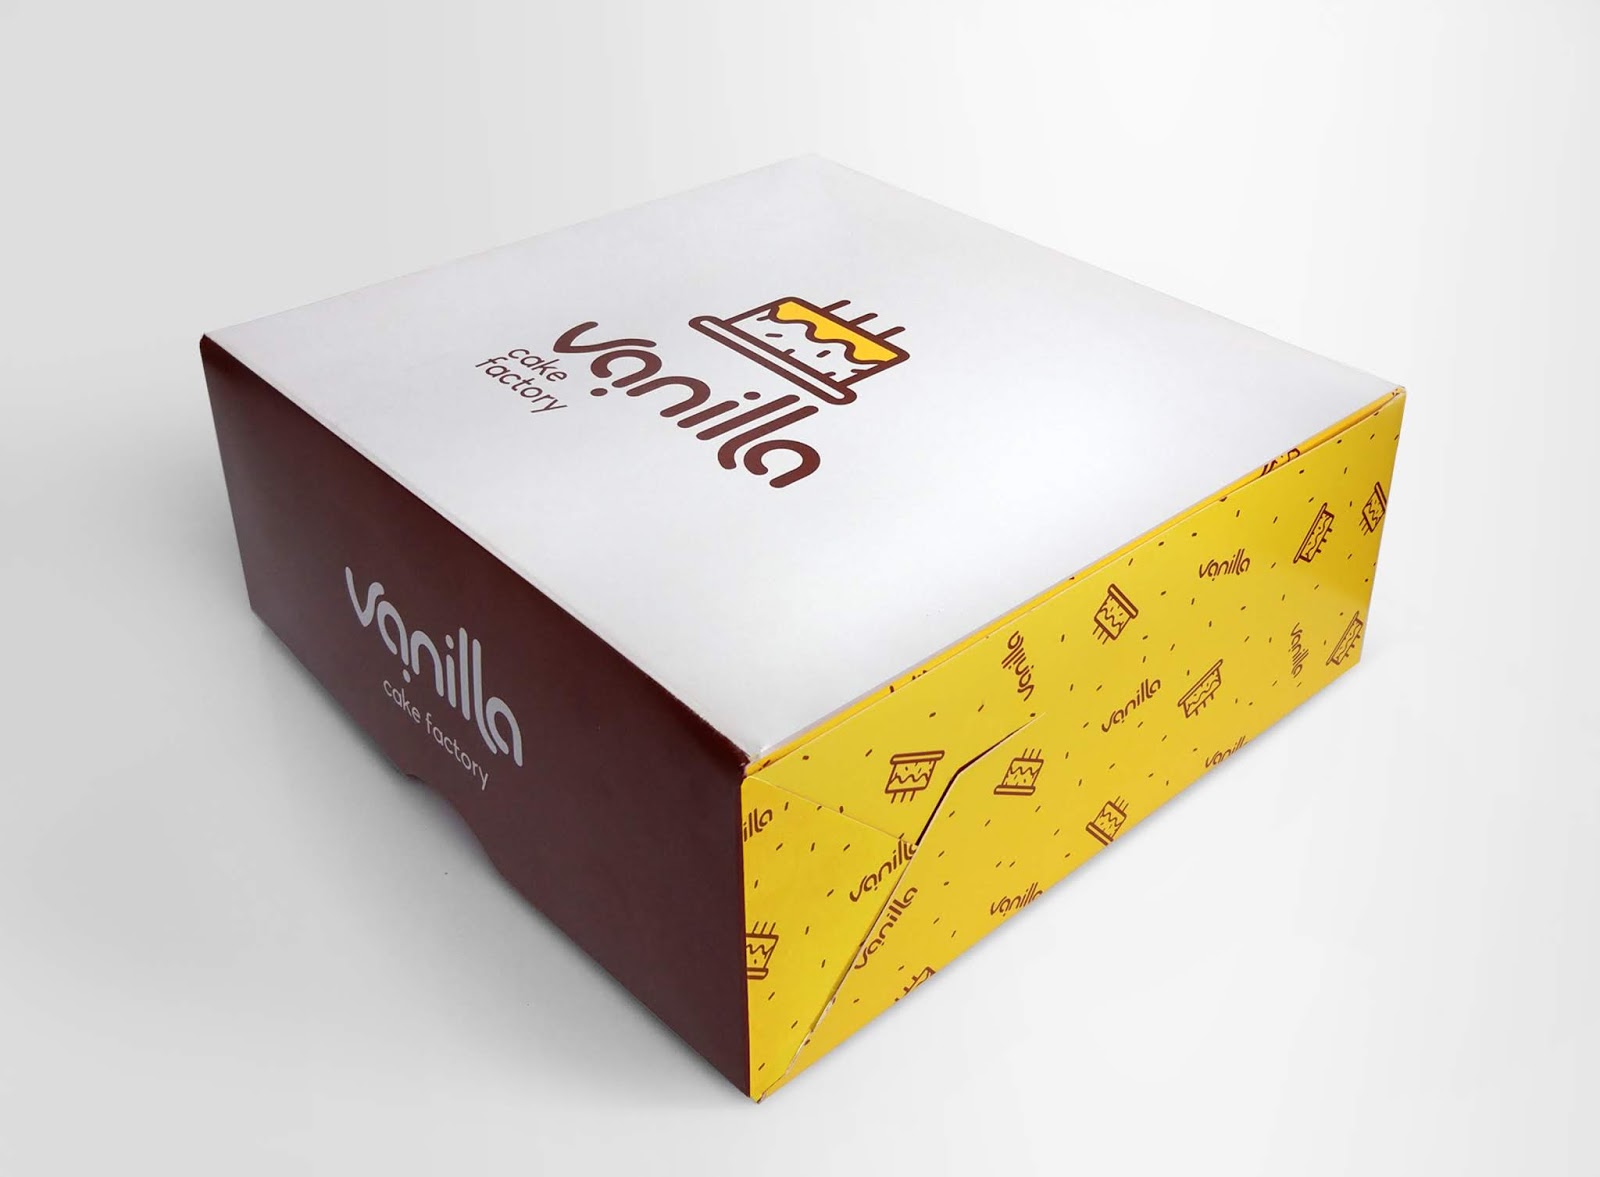 蛋糕面包西安oe欧亿体育app官方下载
品牌策划包装设计VI设计烘焙